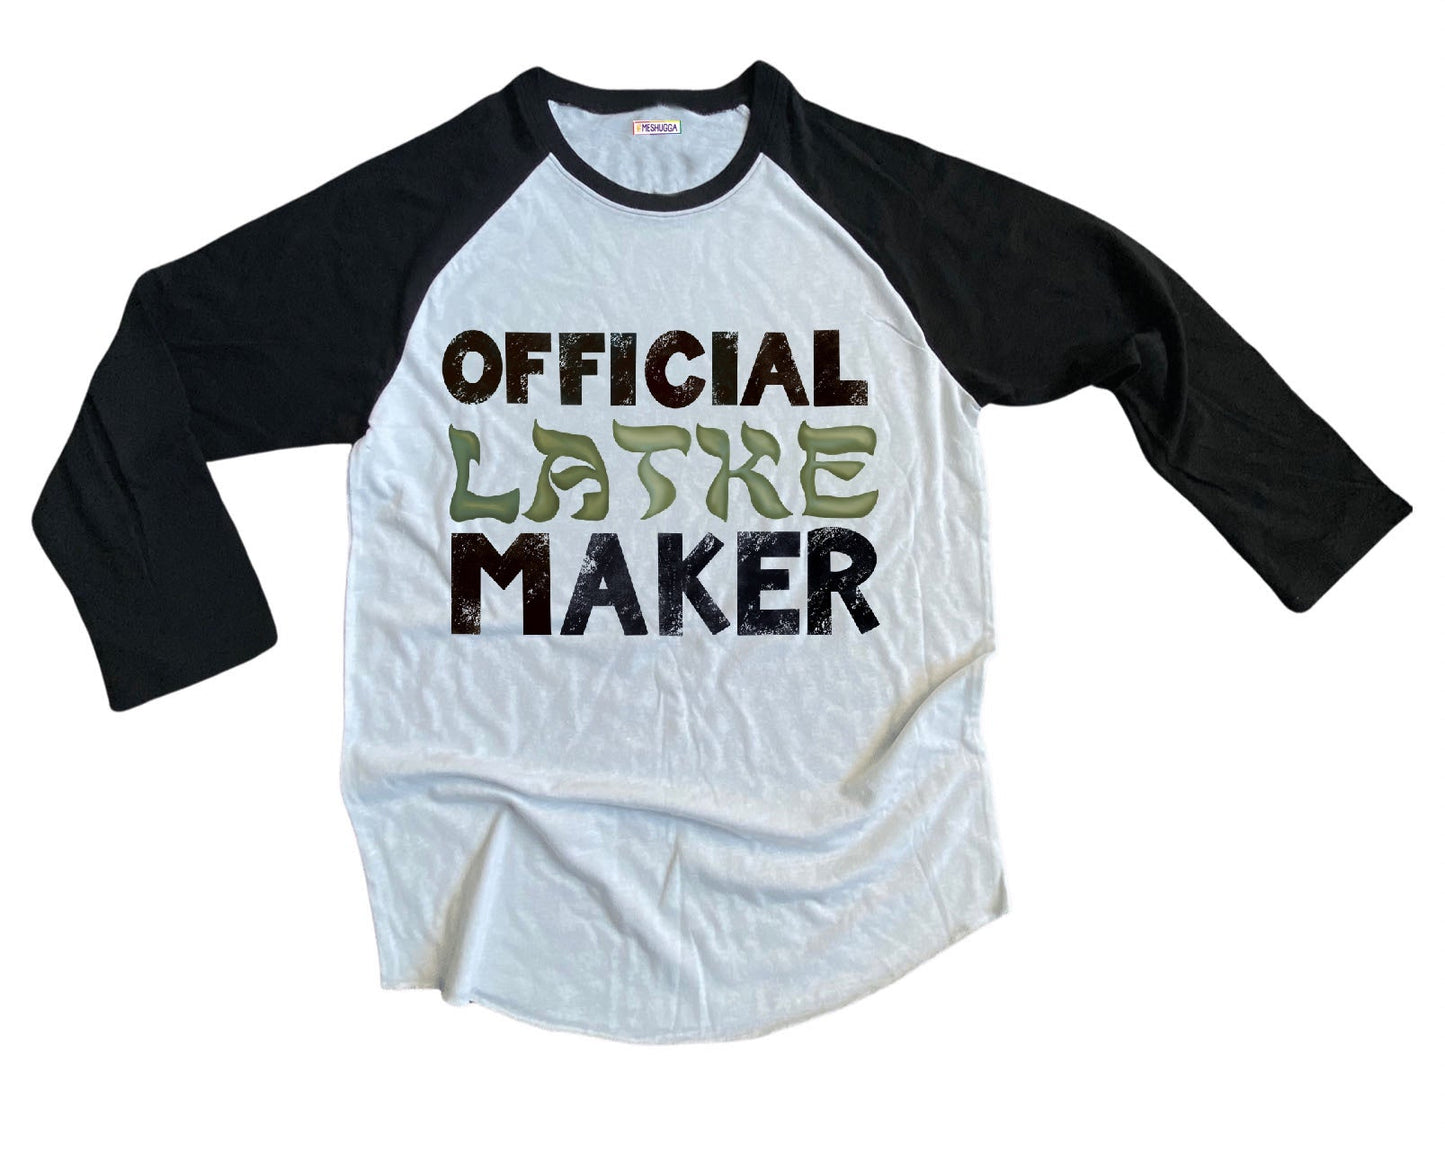 Official Latke Maker Baseball Shirt - Adult